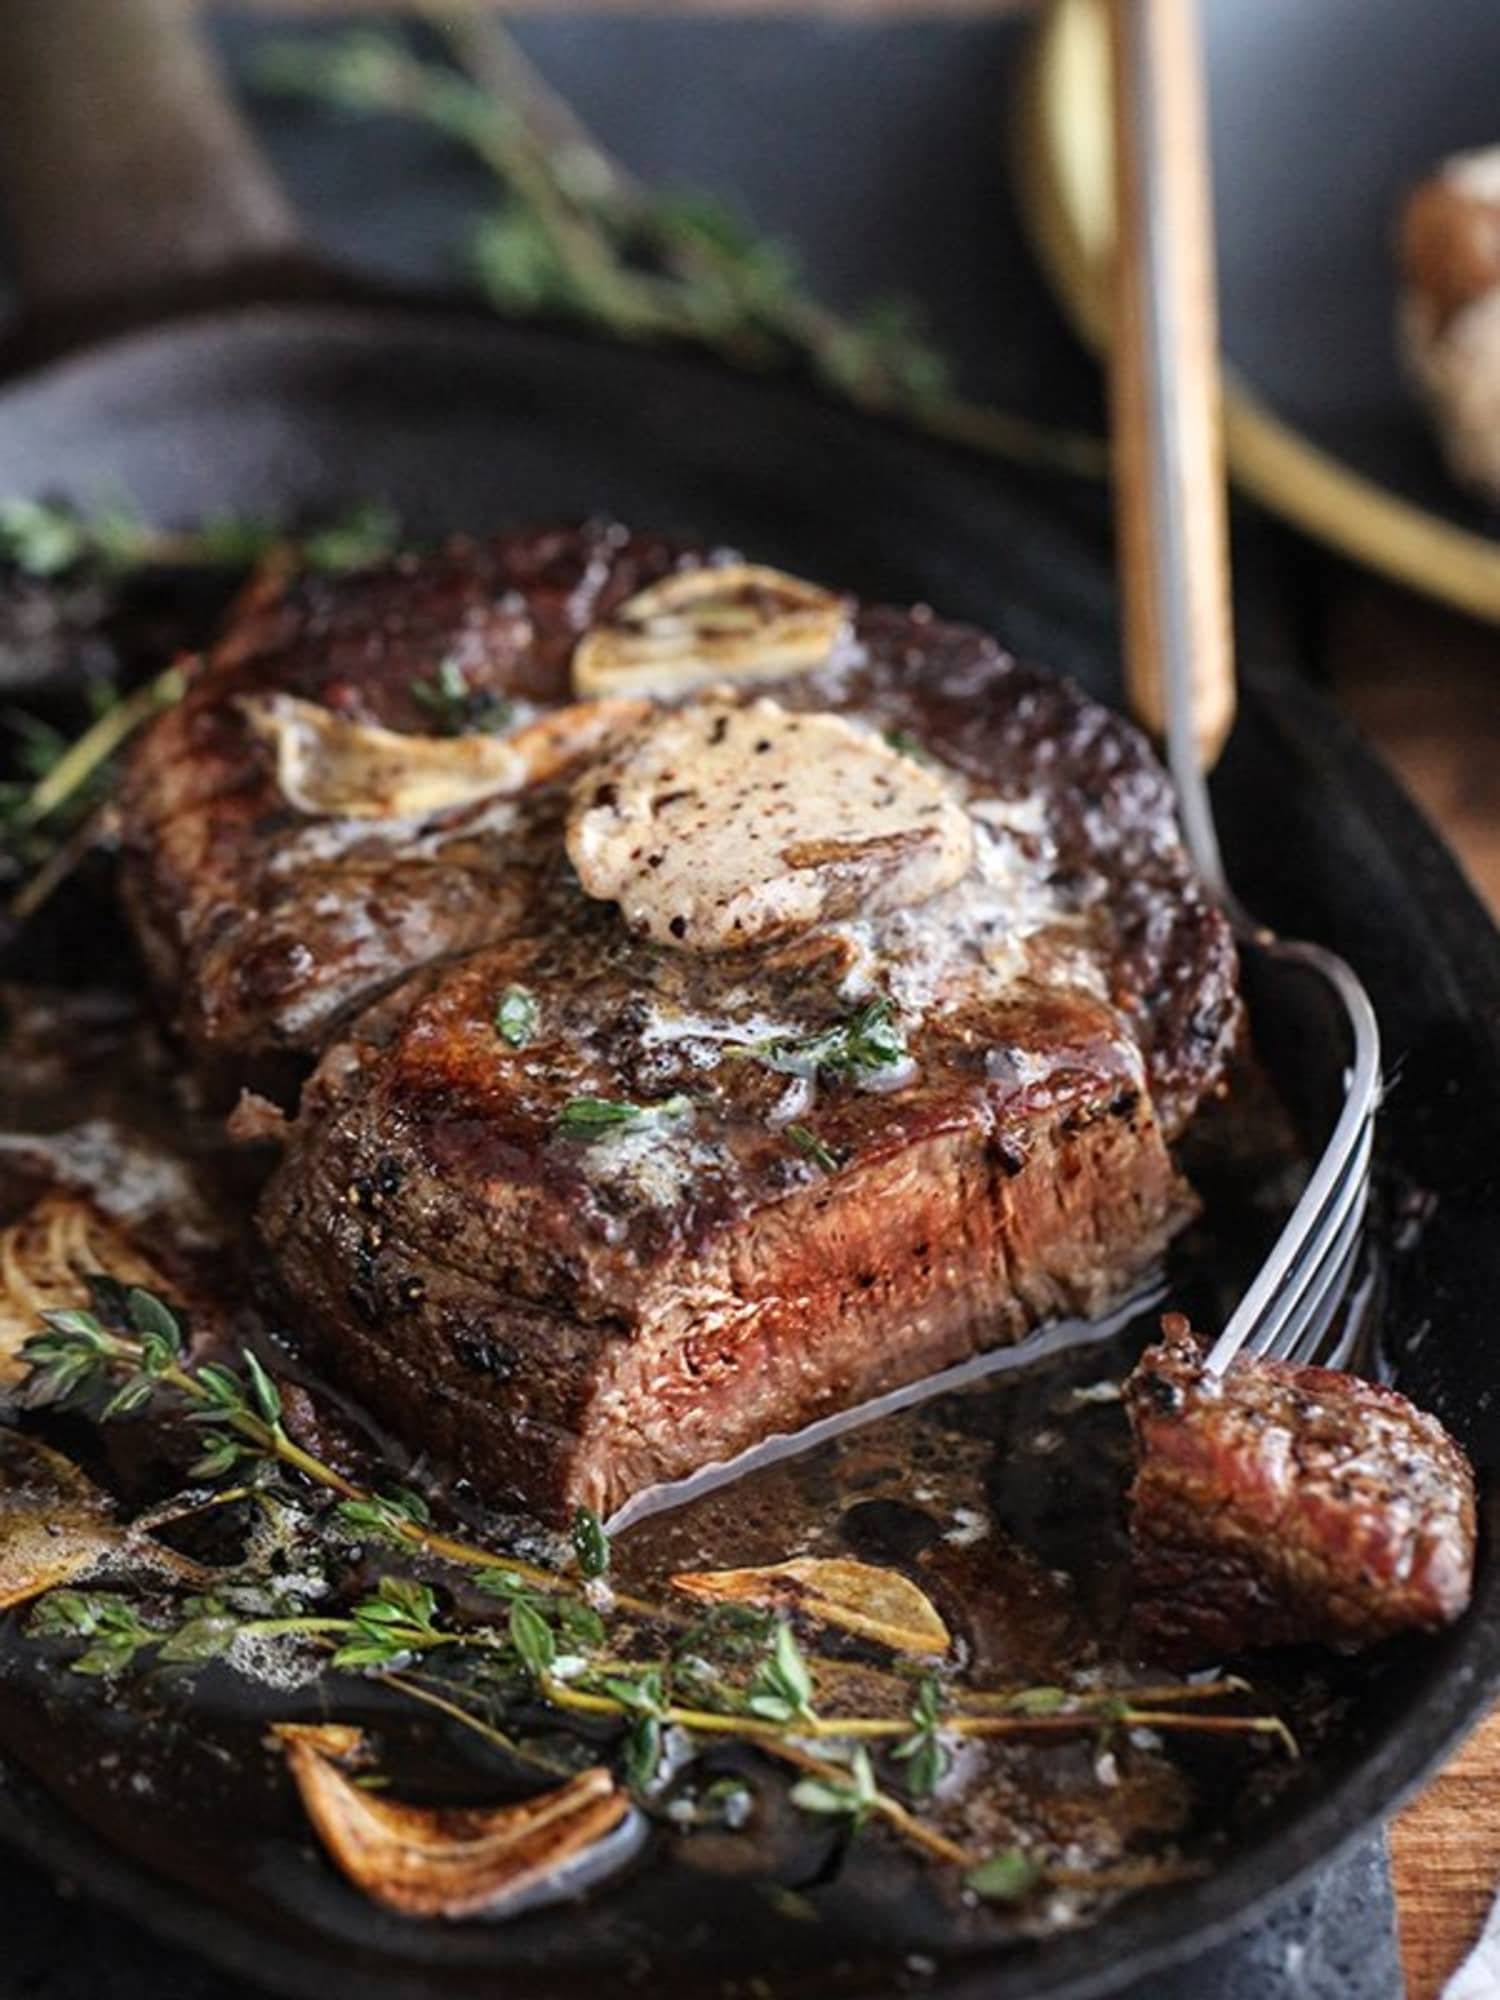 Бифштекс из говядины - как приготовить из рубленного мяса по рецептам в духовке и на сковороде с фото